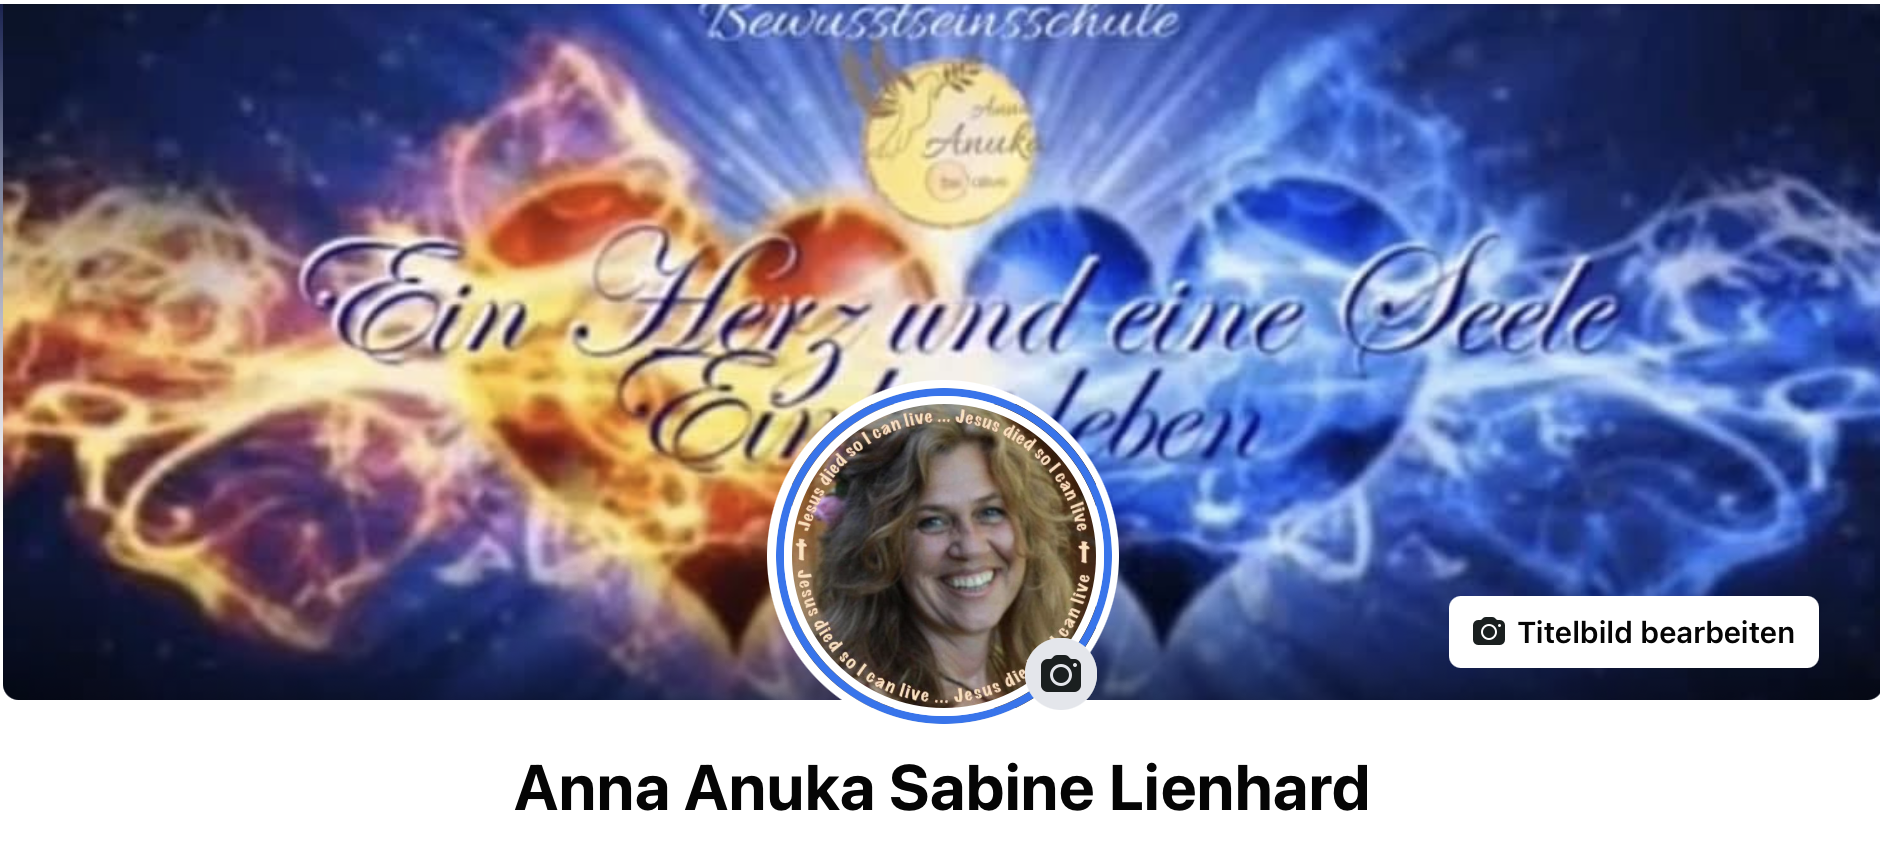 Anna Anuka Sabine Lienhard auf Facebook - http://be-alive-peace-inside.de